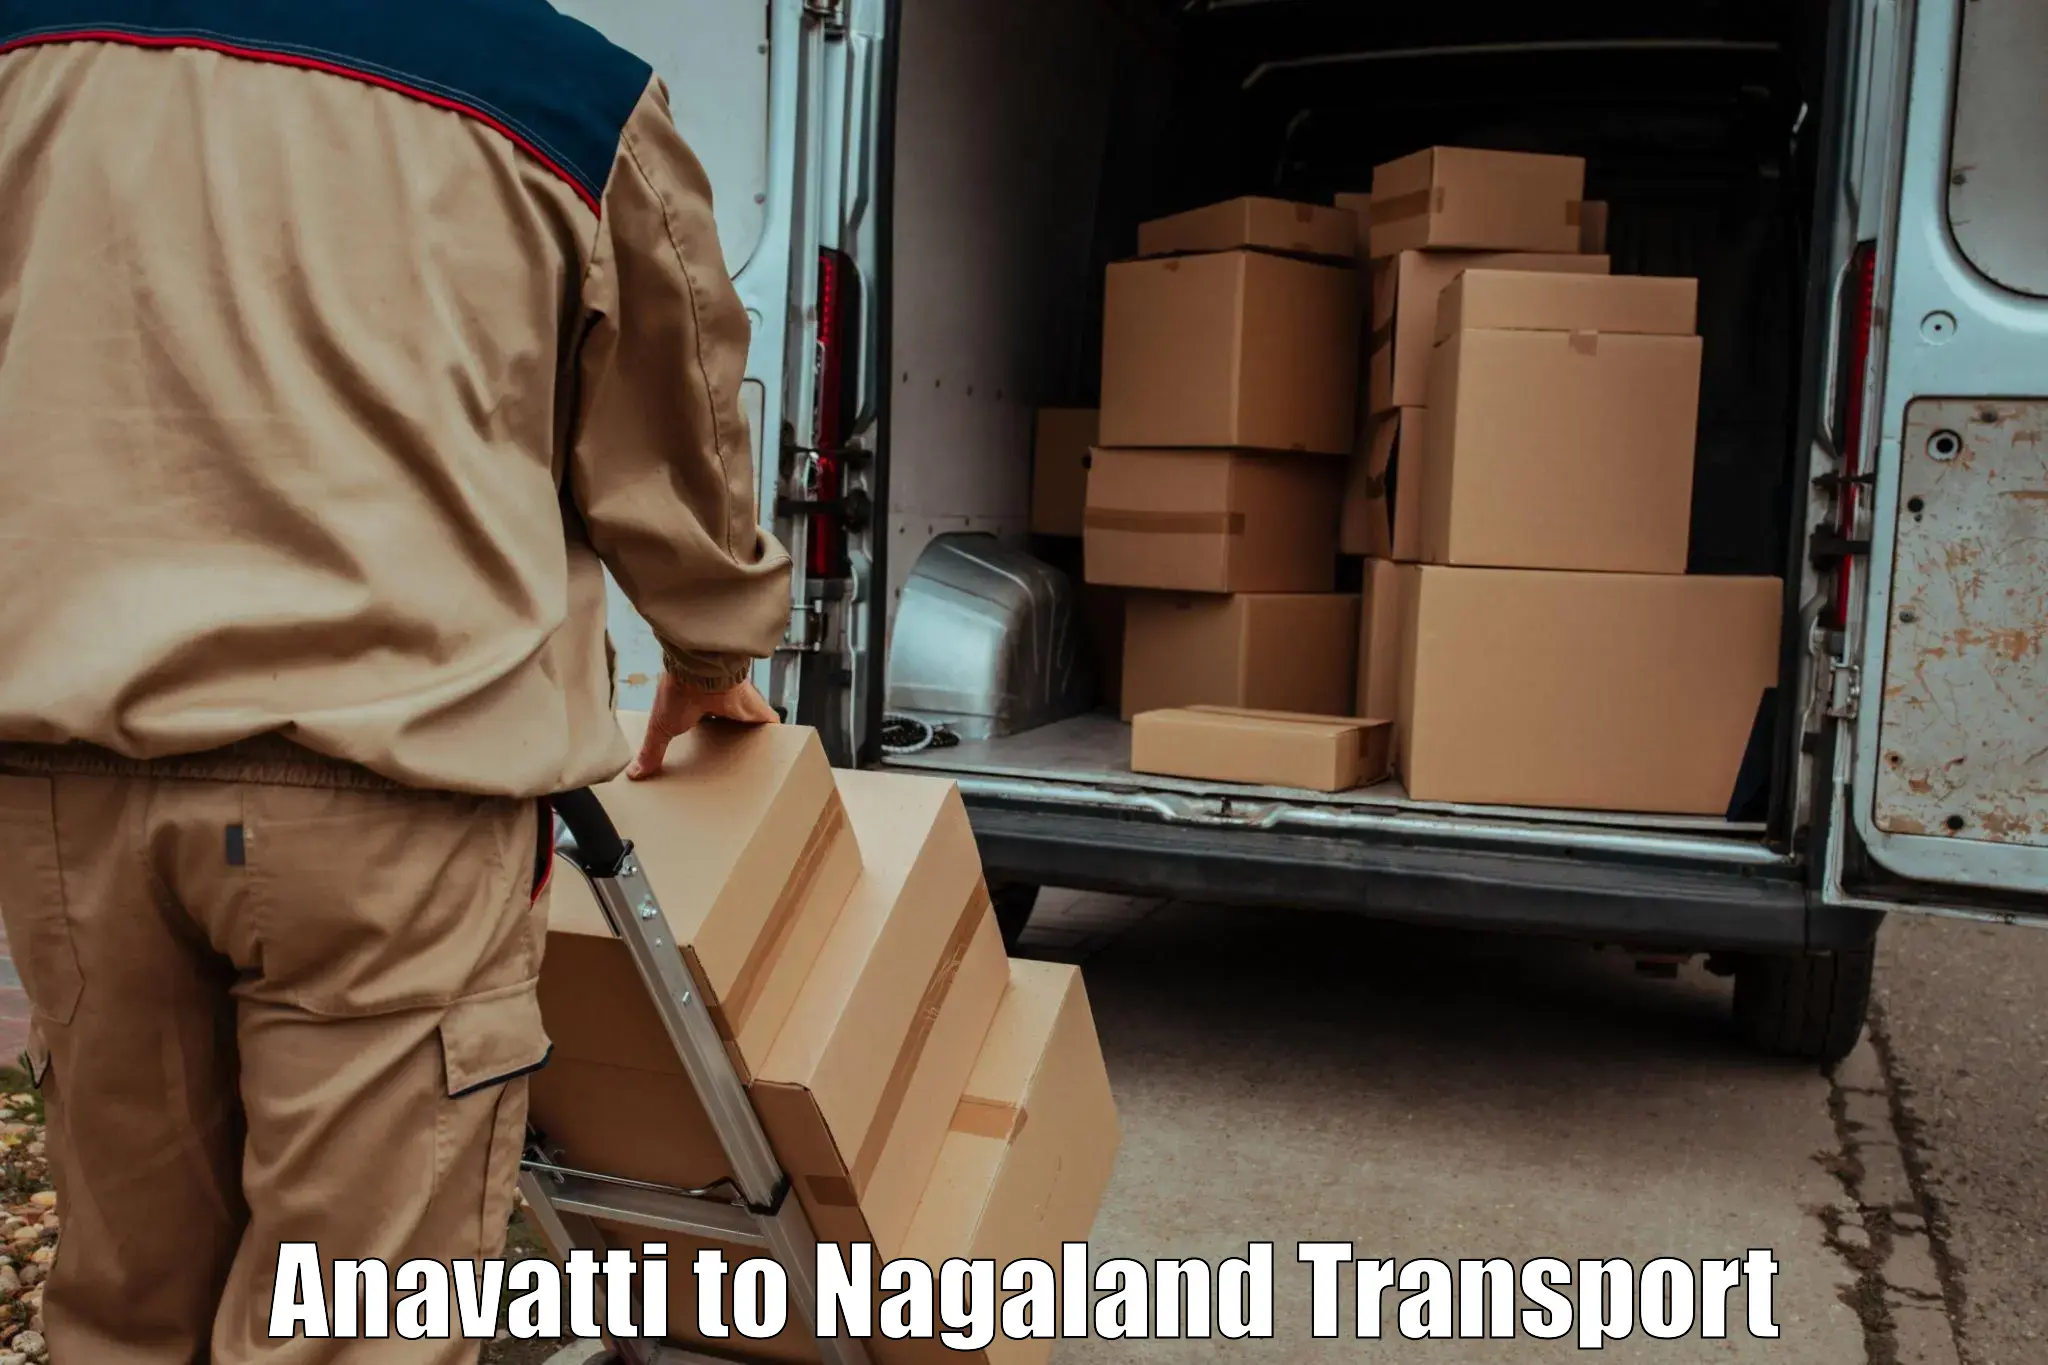 Delivery service in Anavatti to Dimapur